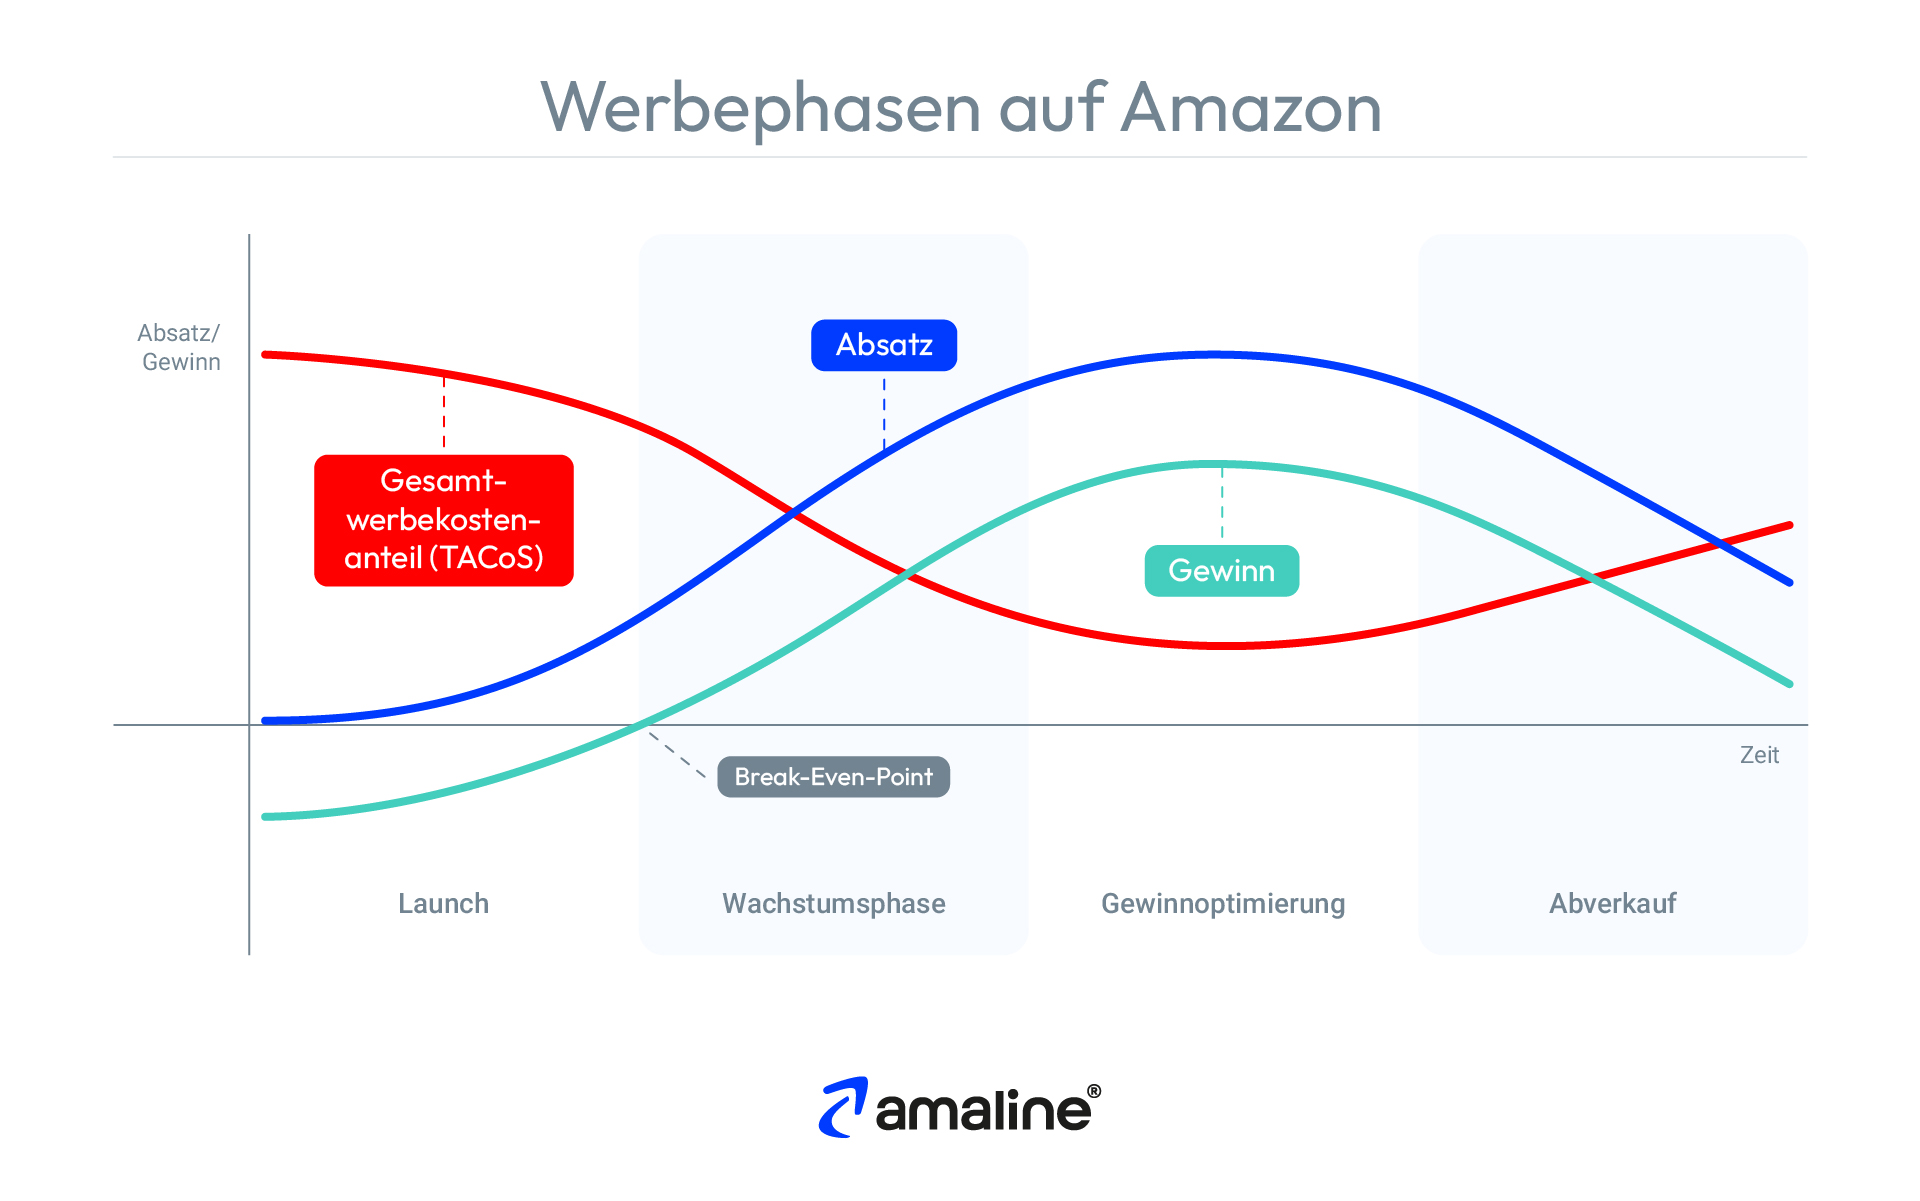 Die Grafik erläutert die vier verschiedenen Werbephasen auf Amazon, die sich aus dem Produktlebenszyklus aus der klassischen BWL herleiten lassen.